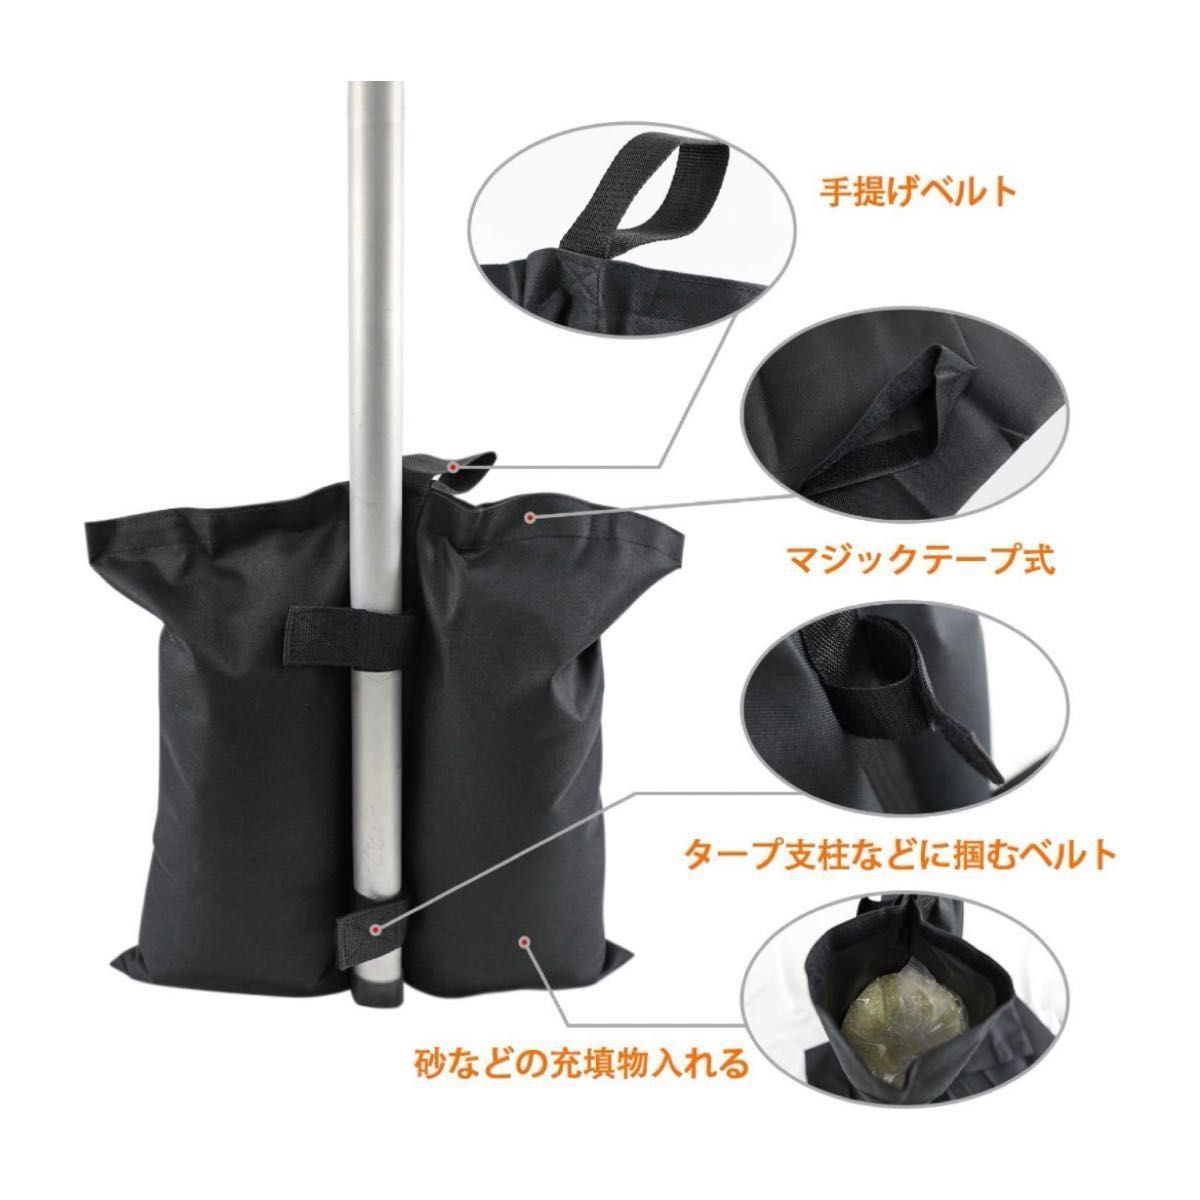 テント タープ 固定用 砂袋 ウエイトバッグ 重り 重し袋 テントウエイト 